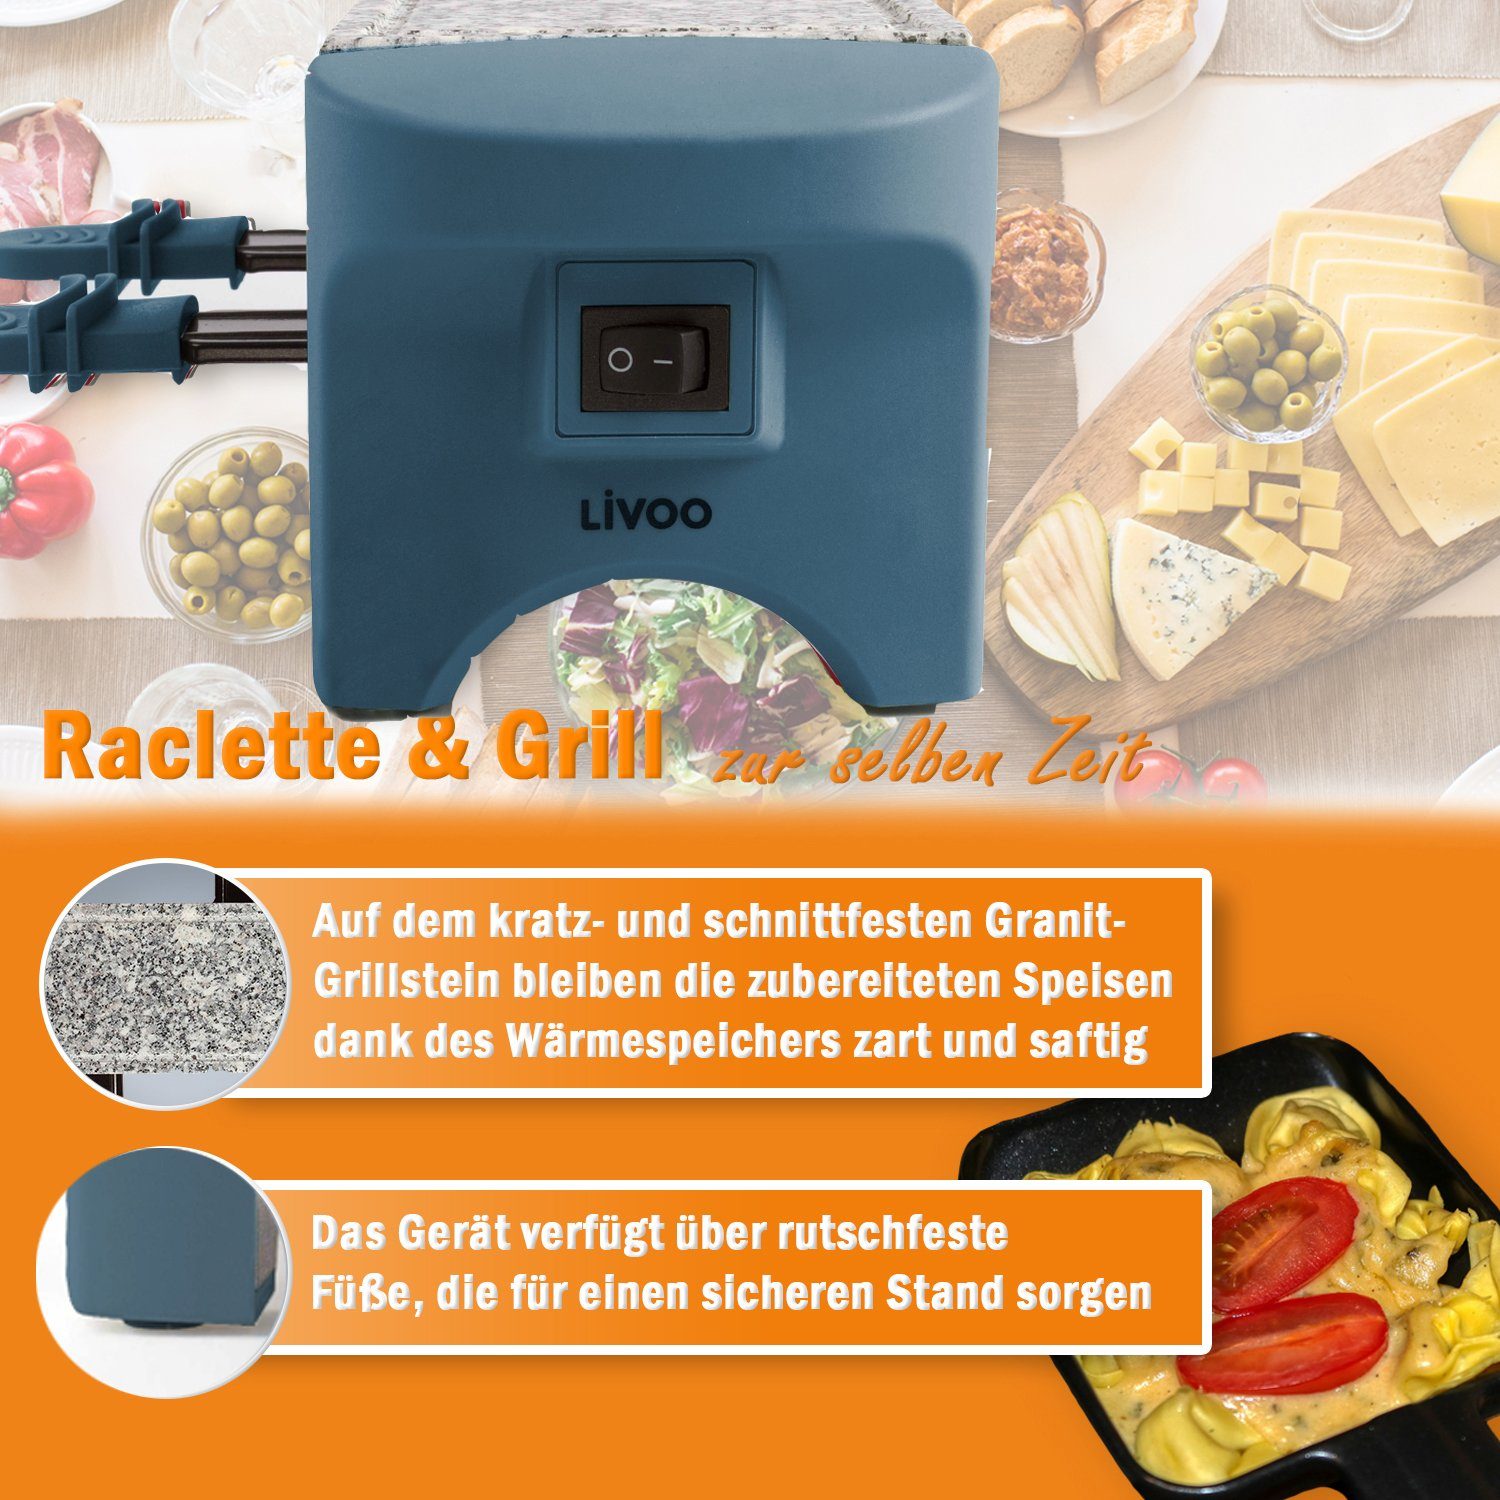 LIVOO Raclette LIVOO W, Granitplatte Raclettegrill Raclette Natursteinplatte, blau, 2 DOC156BS Personen Raclettepfännchen, 2 Antihaftbeschichtung 2 350,00 Raclettepfännchen